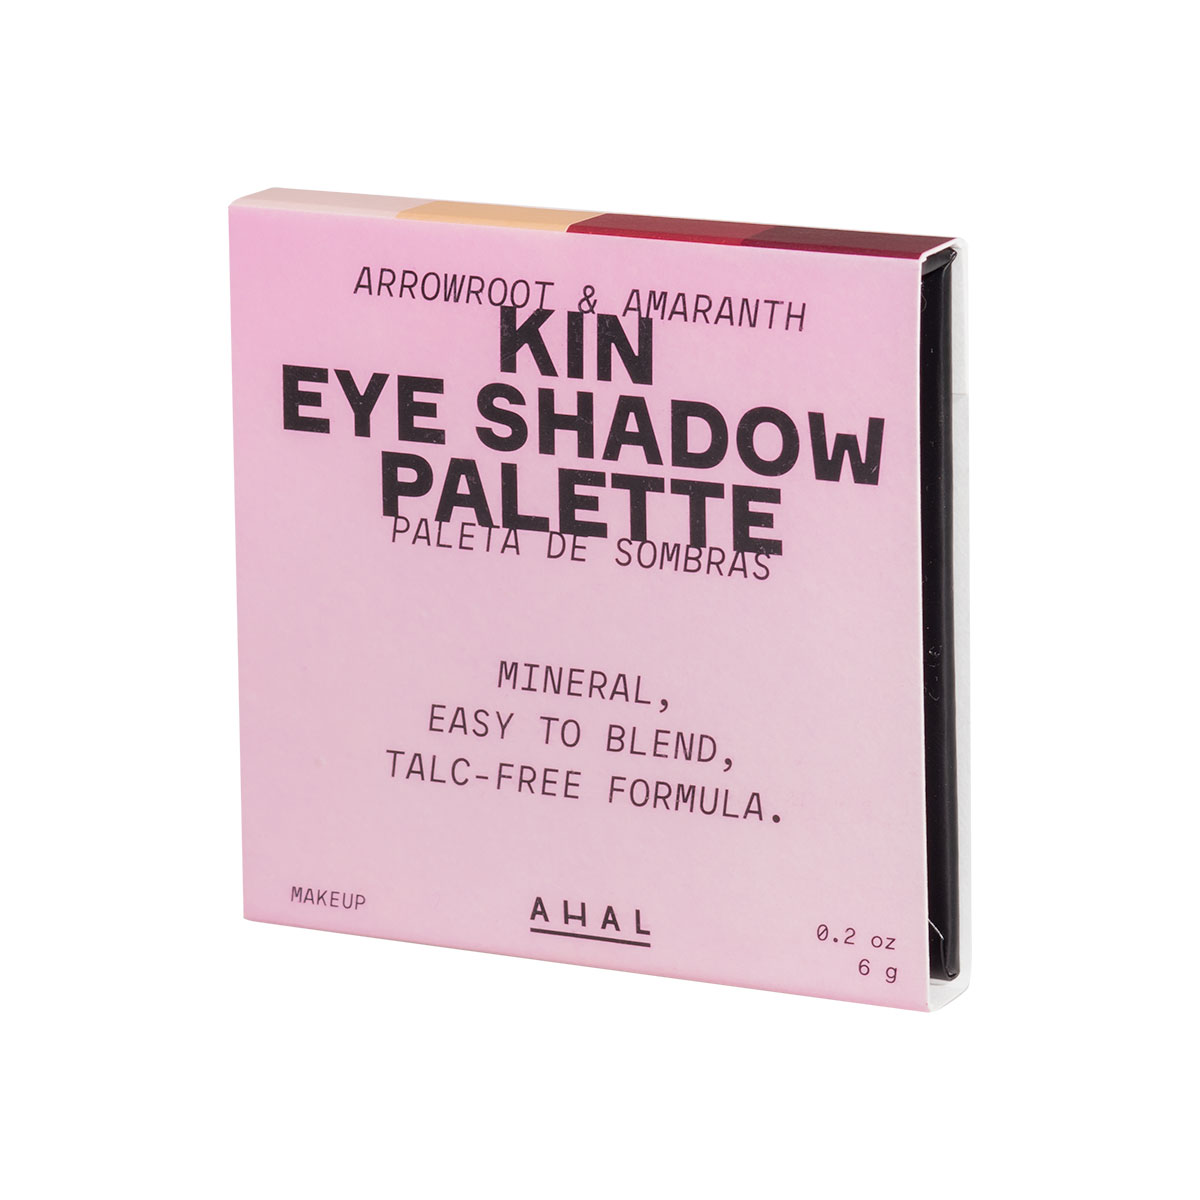 kin eye shadow palette (paleta de sombras kin)